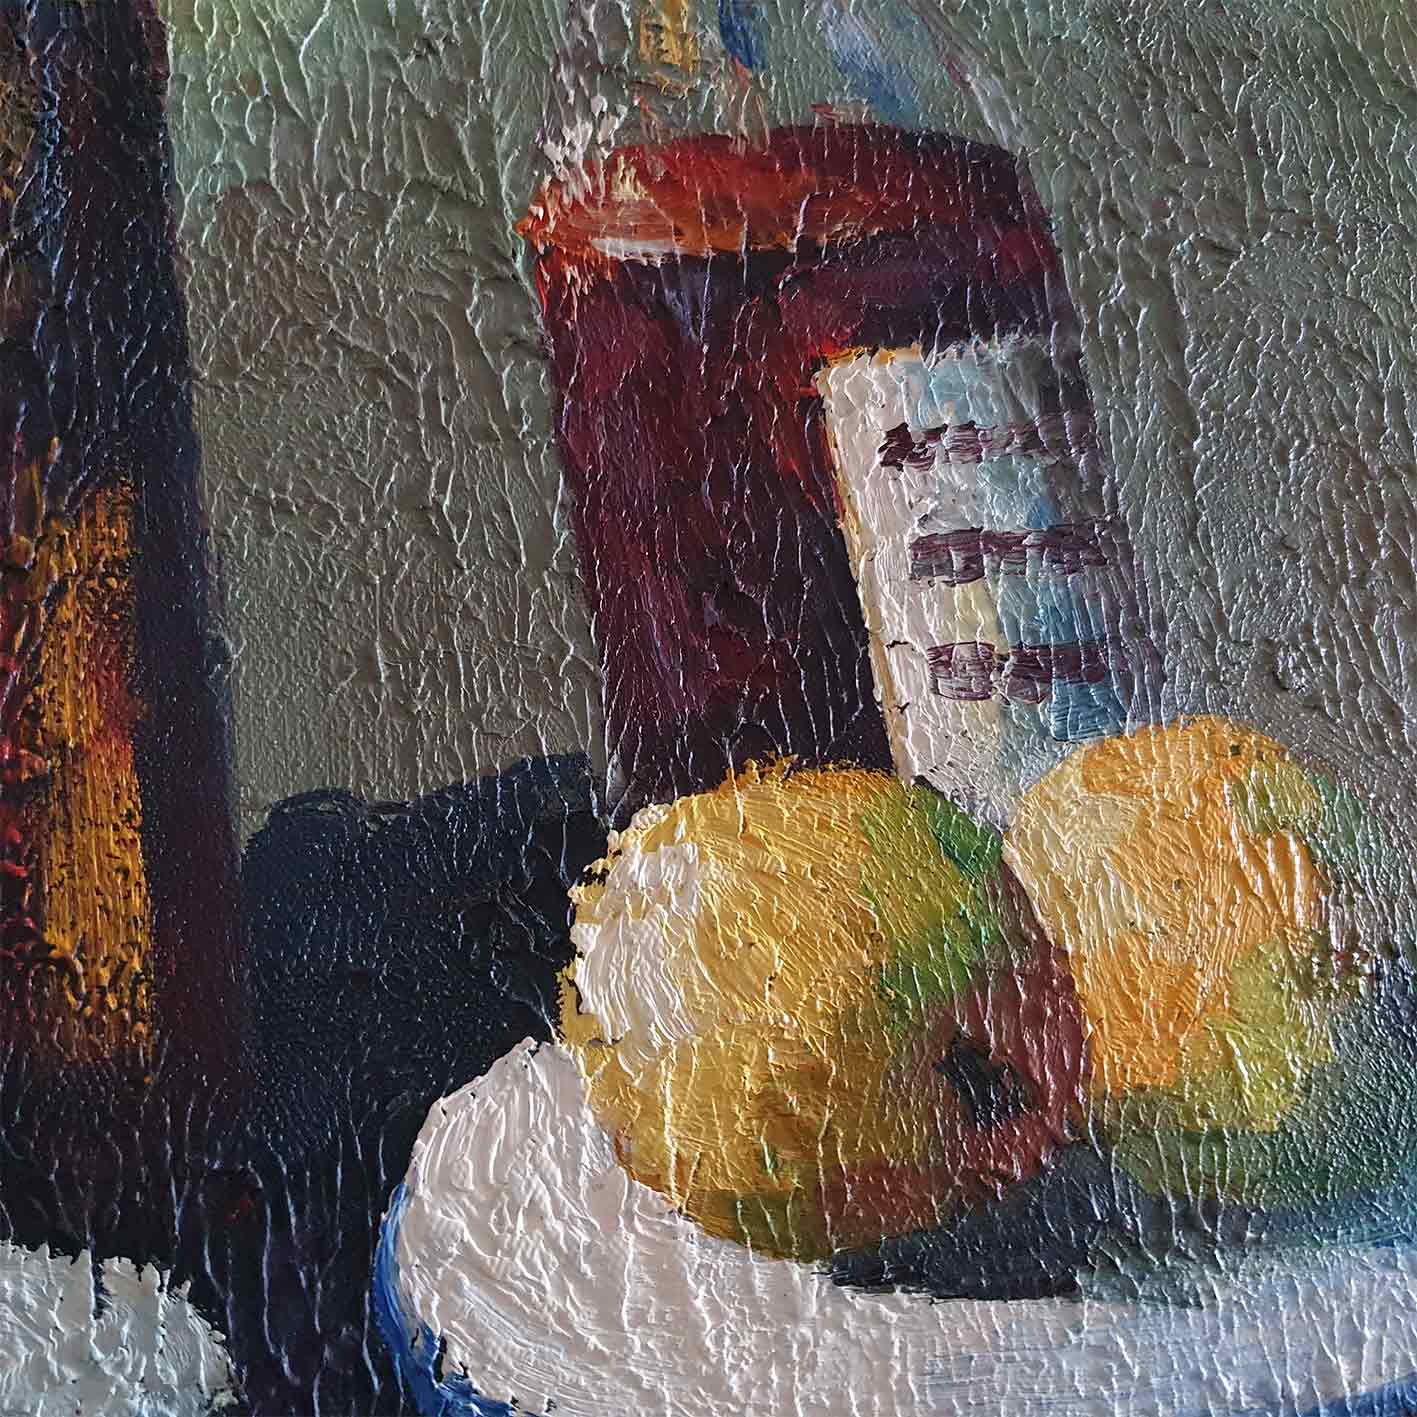 Wein-Diptychon-Gemälde 50X60 cm [2 Stück]